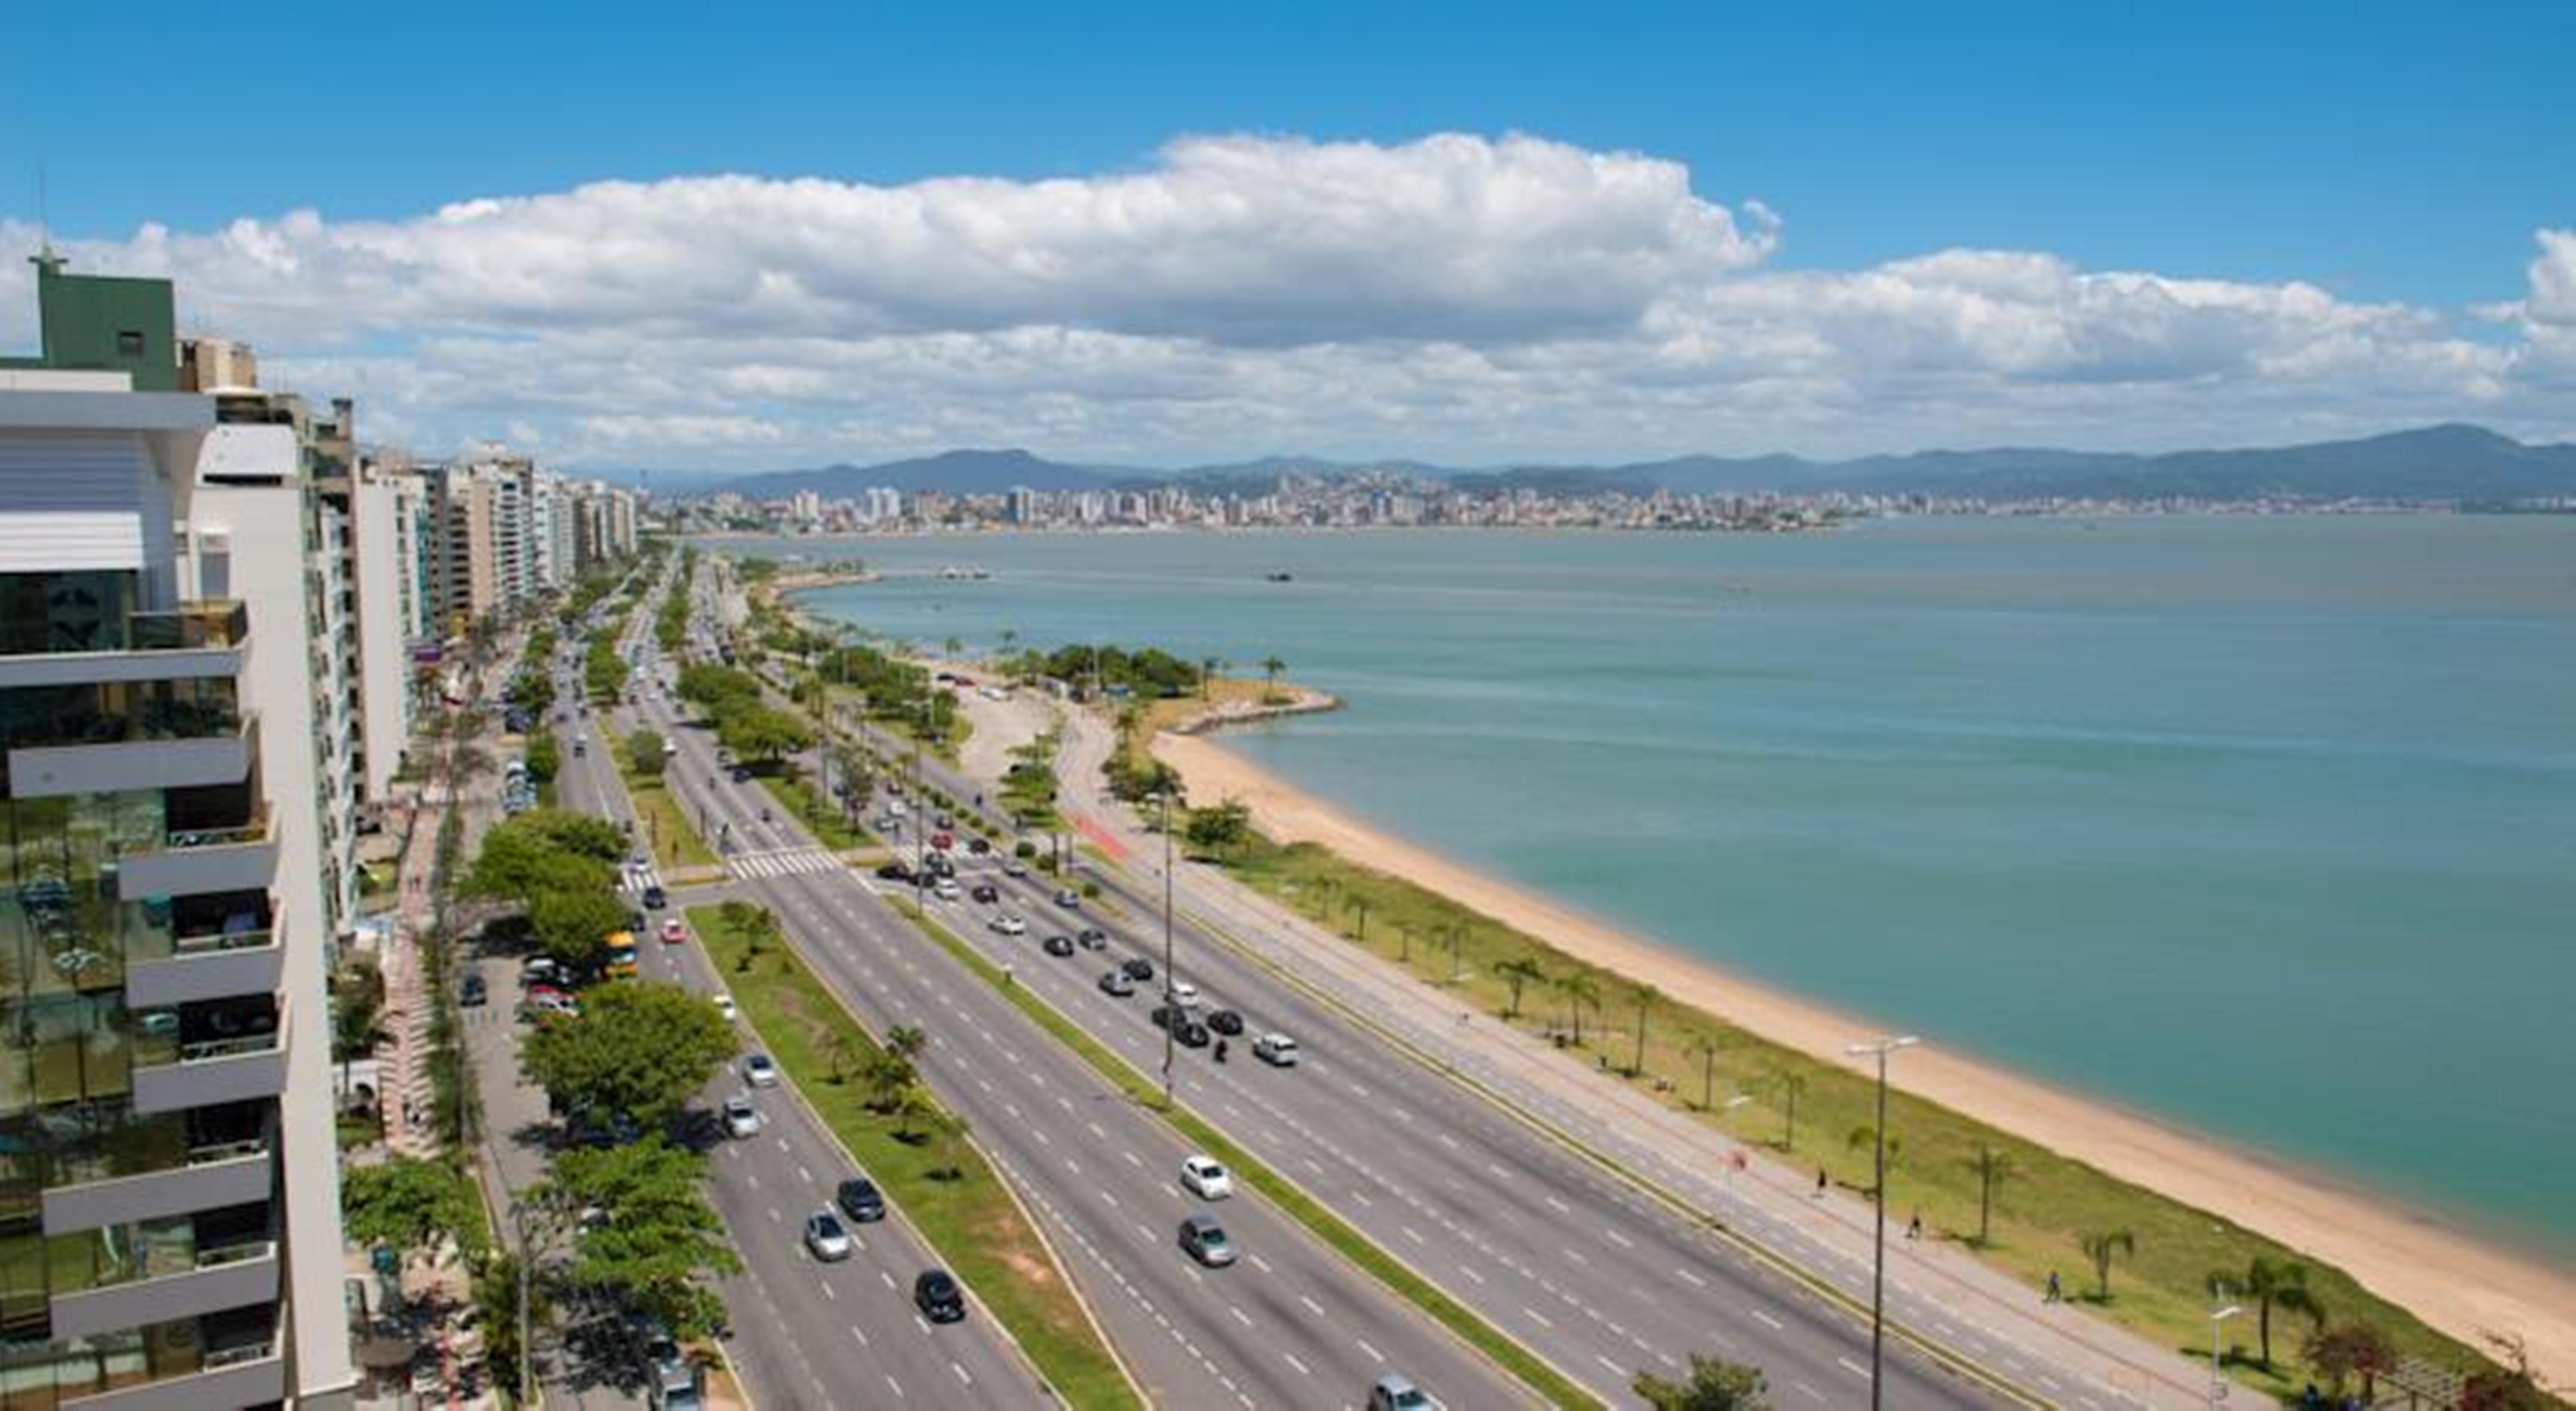 Hotel Blue Tree Premium Florianópolis Zewnętrze zdjęcie